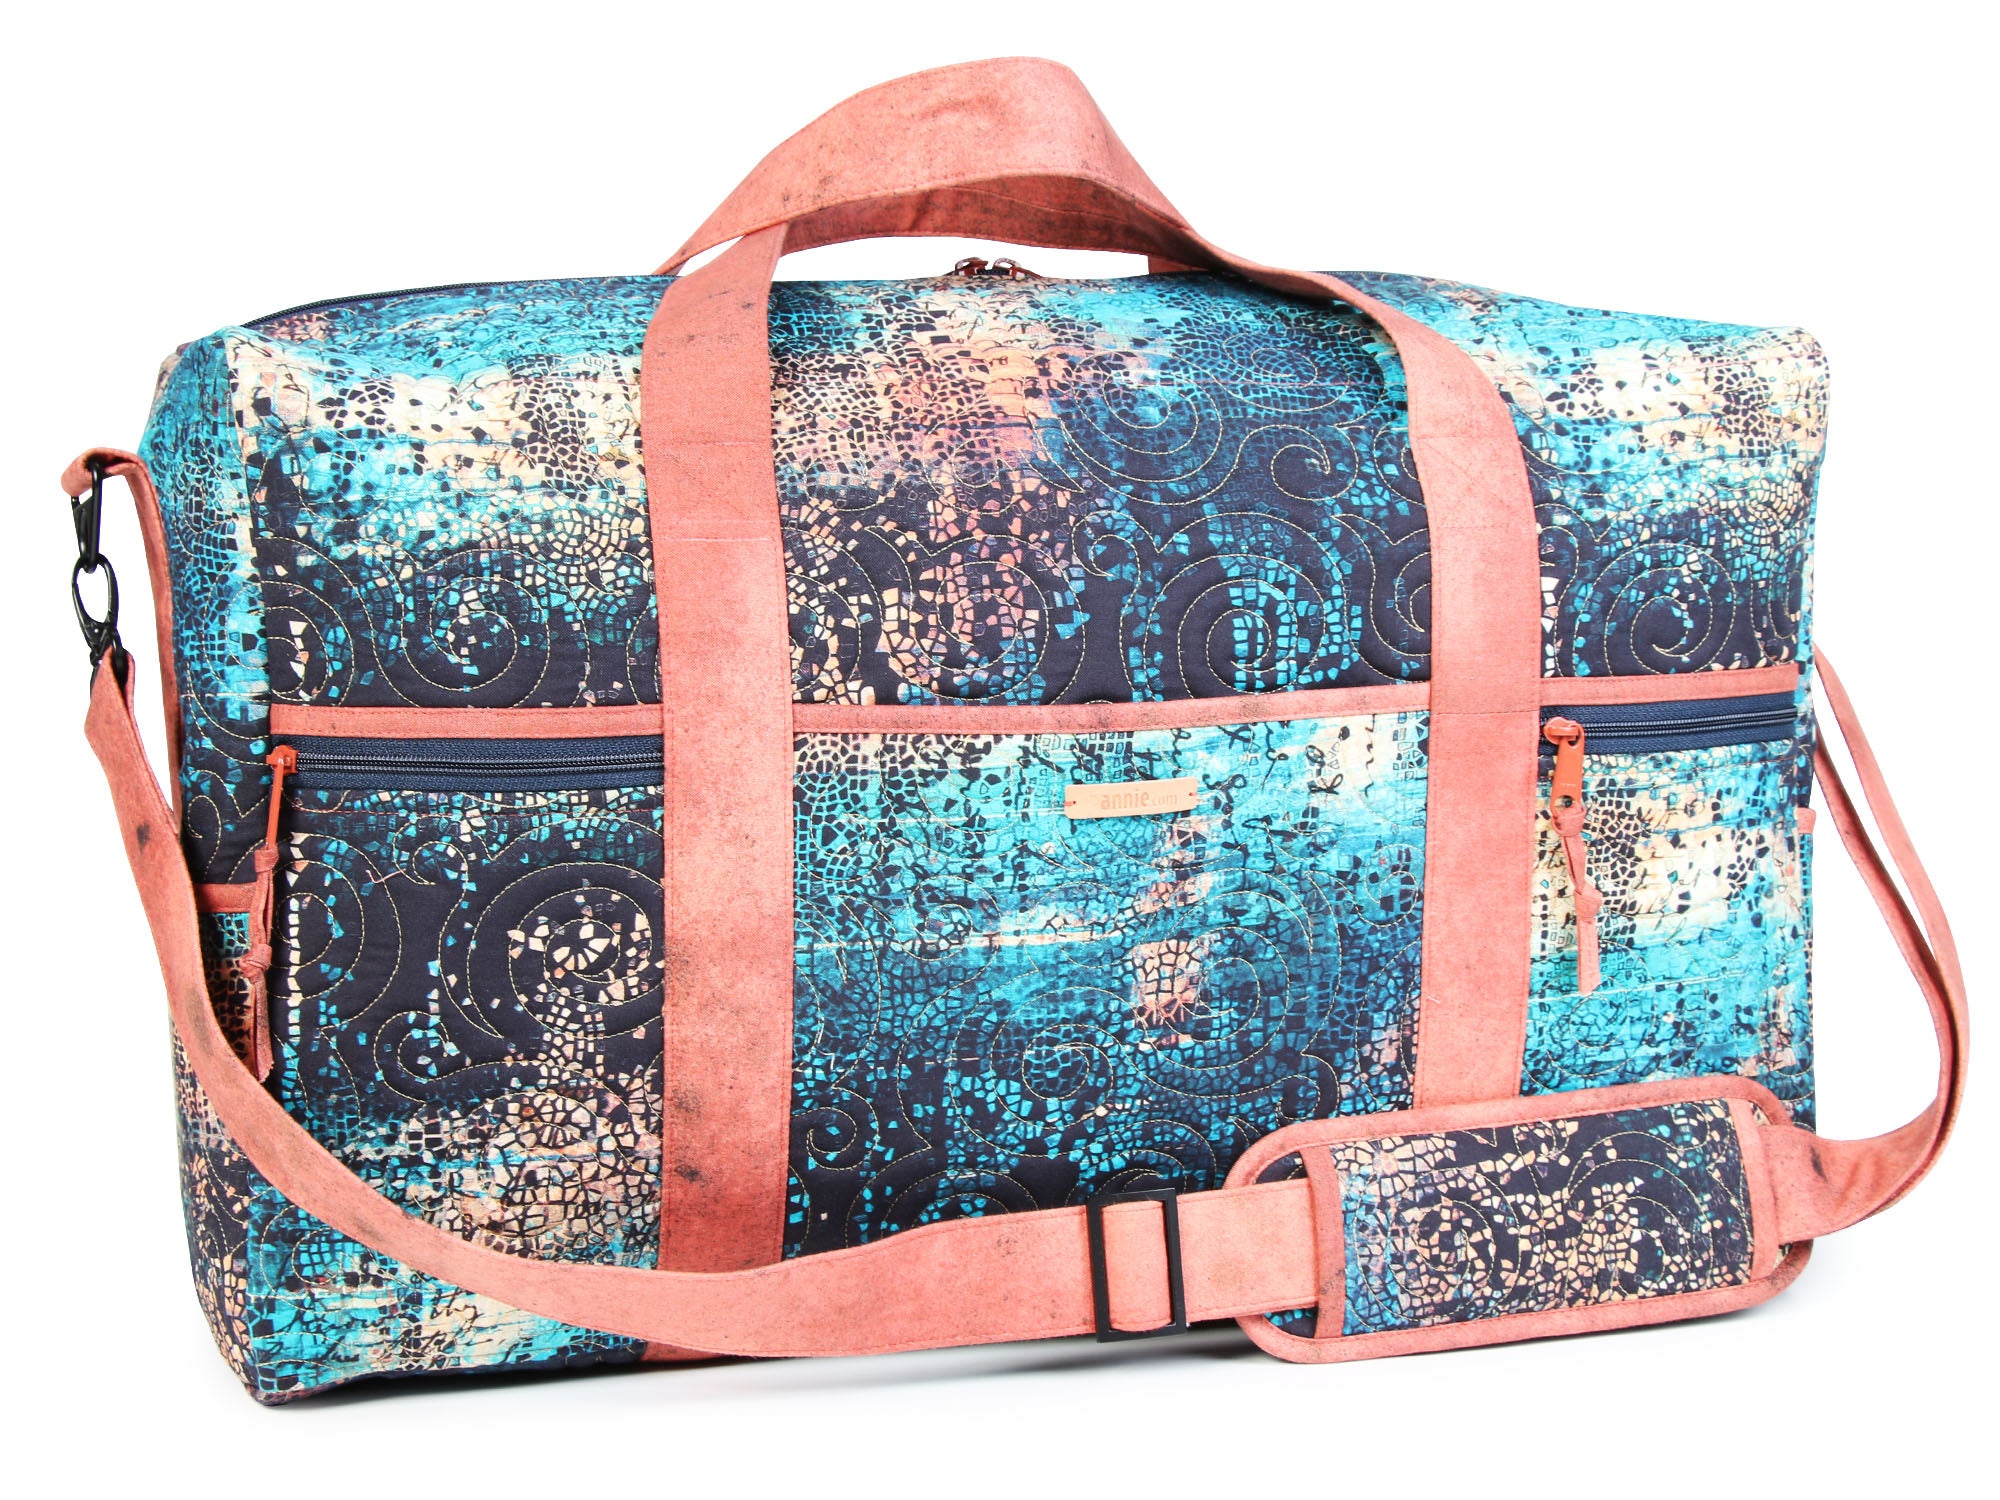 Travel Duffle Bag 2.1 - by Annie